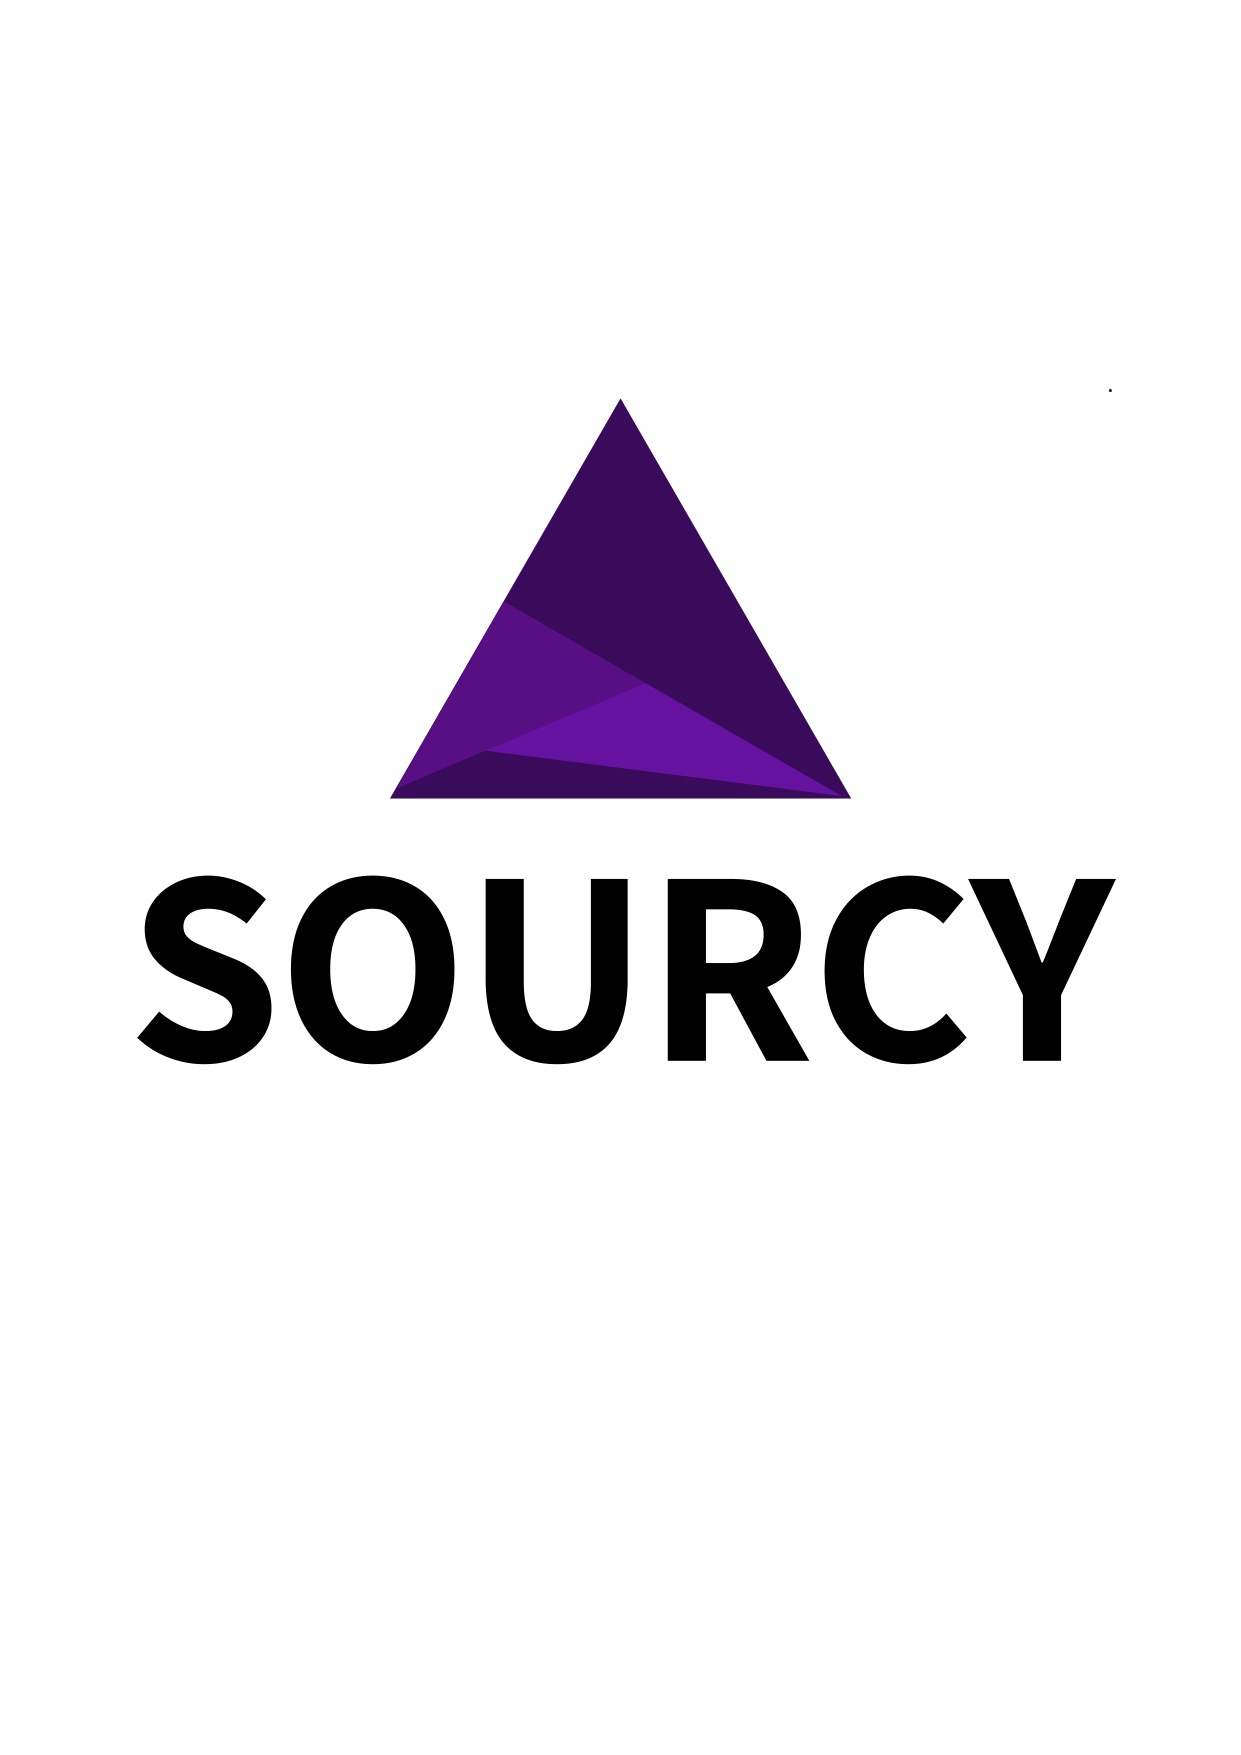 Sourcy - Fondo blanco